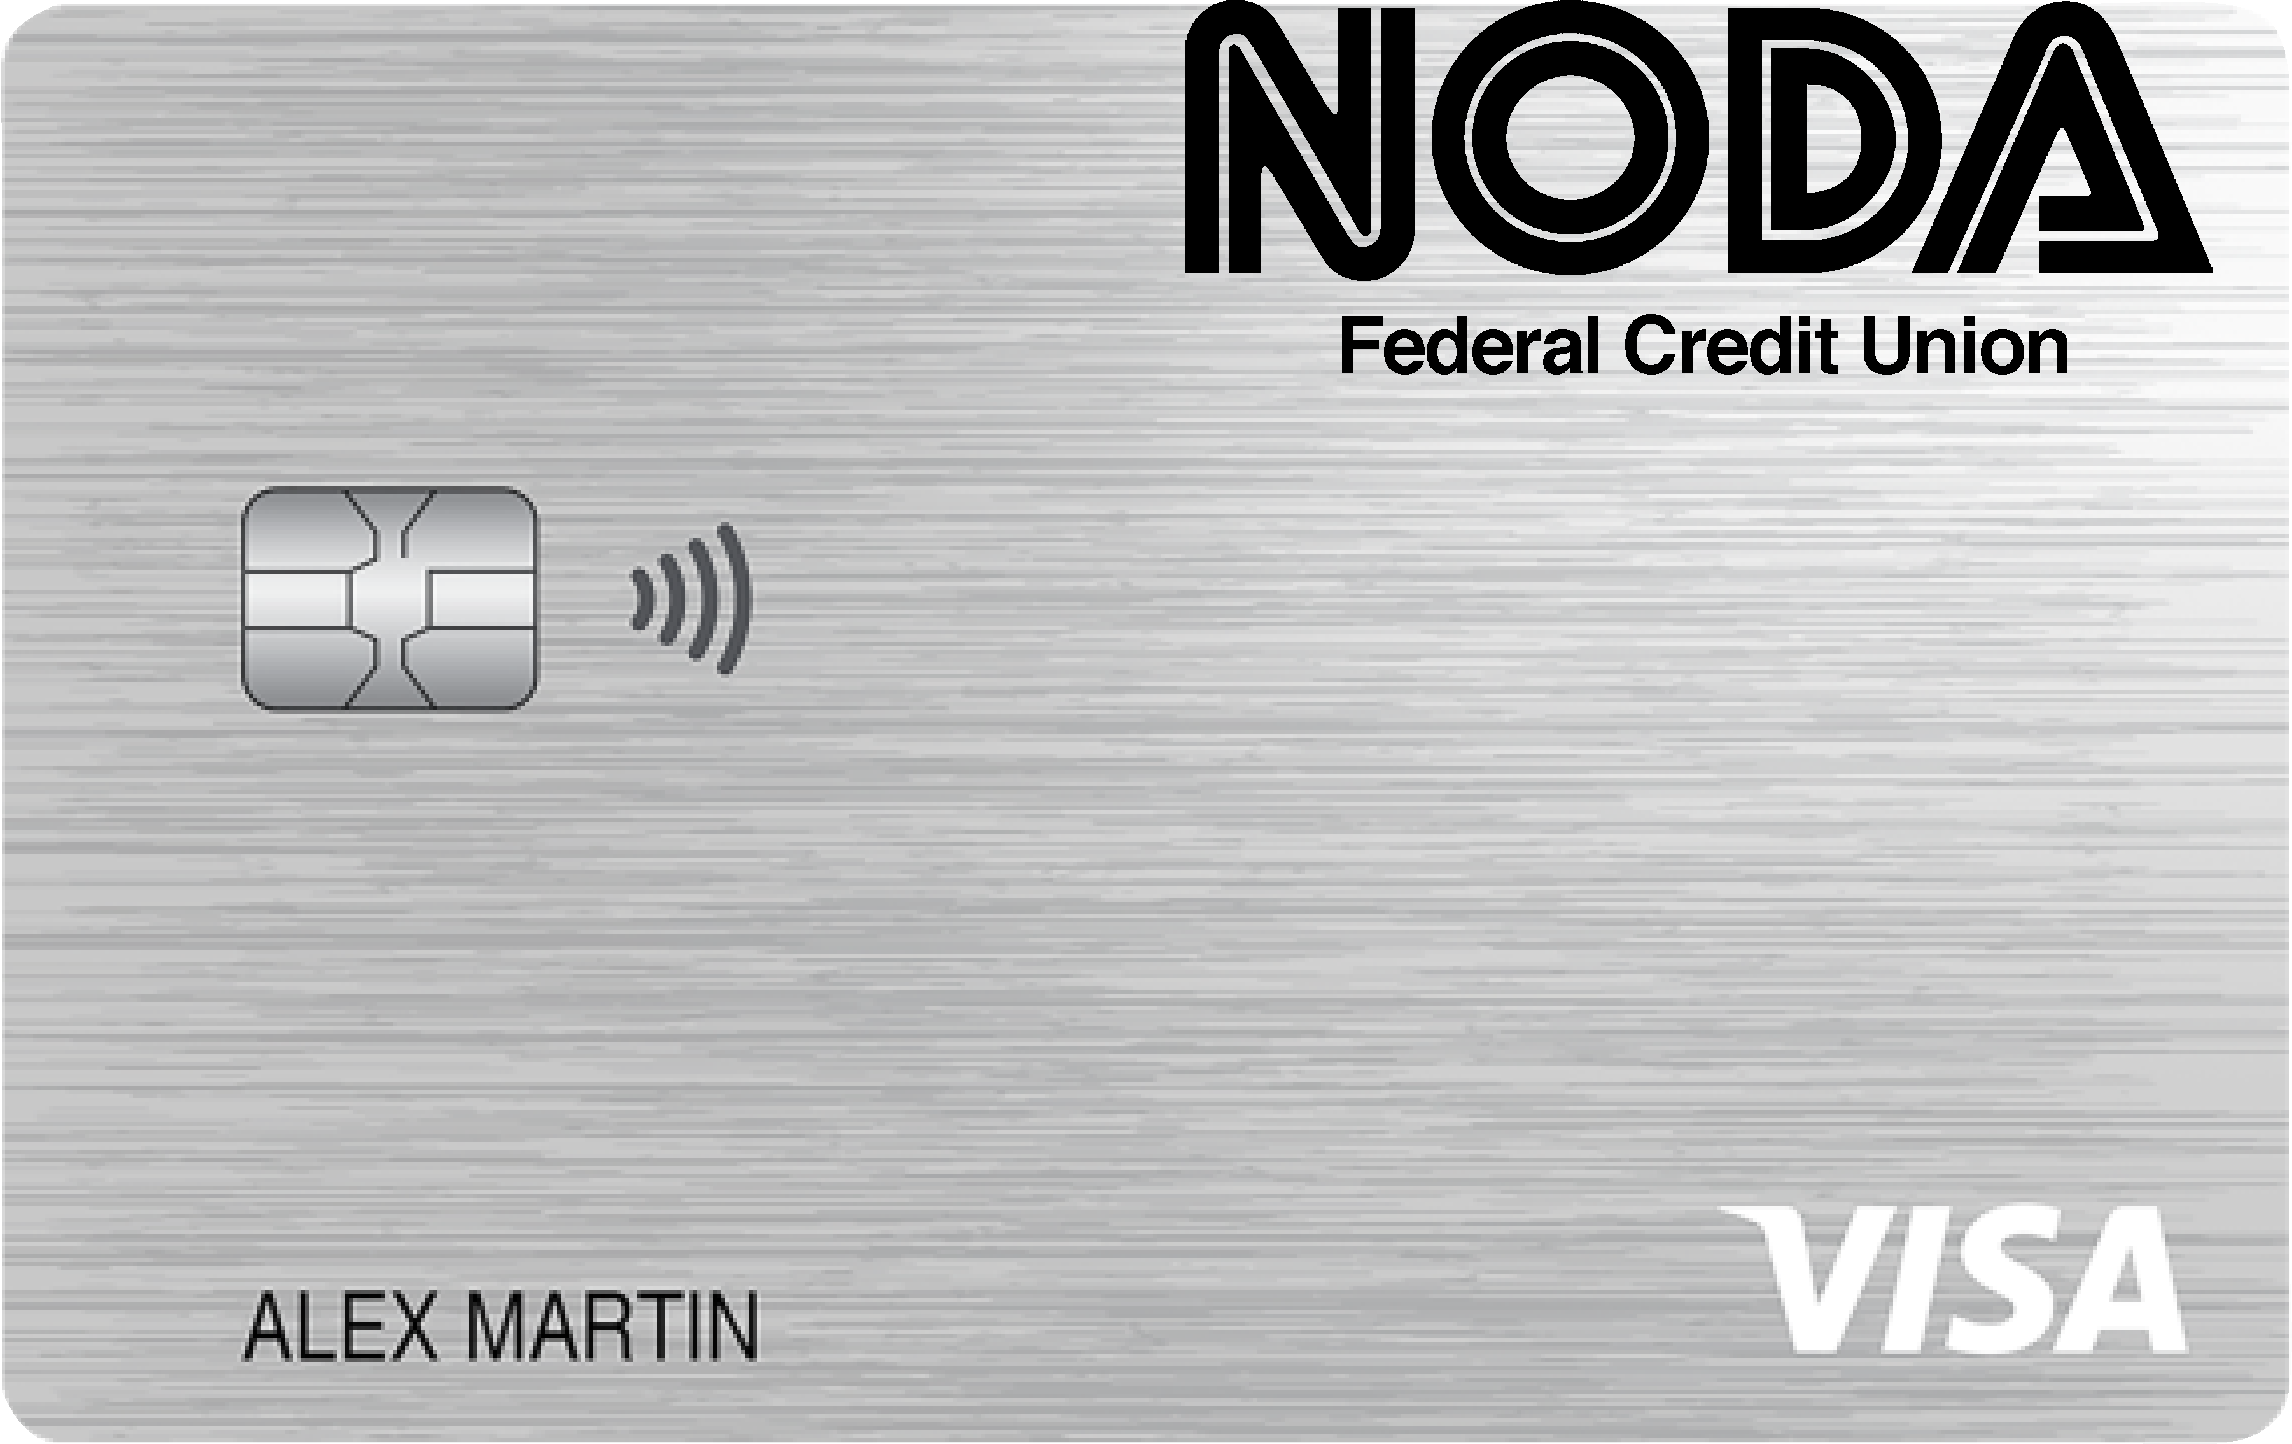 NODA Federal Credit Union Platinum Card